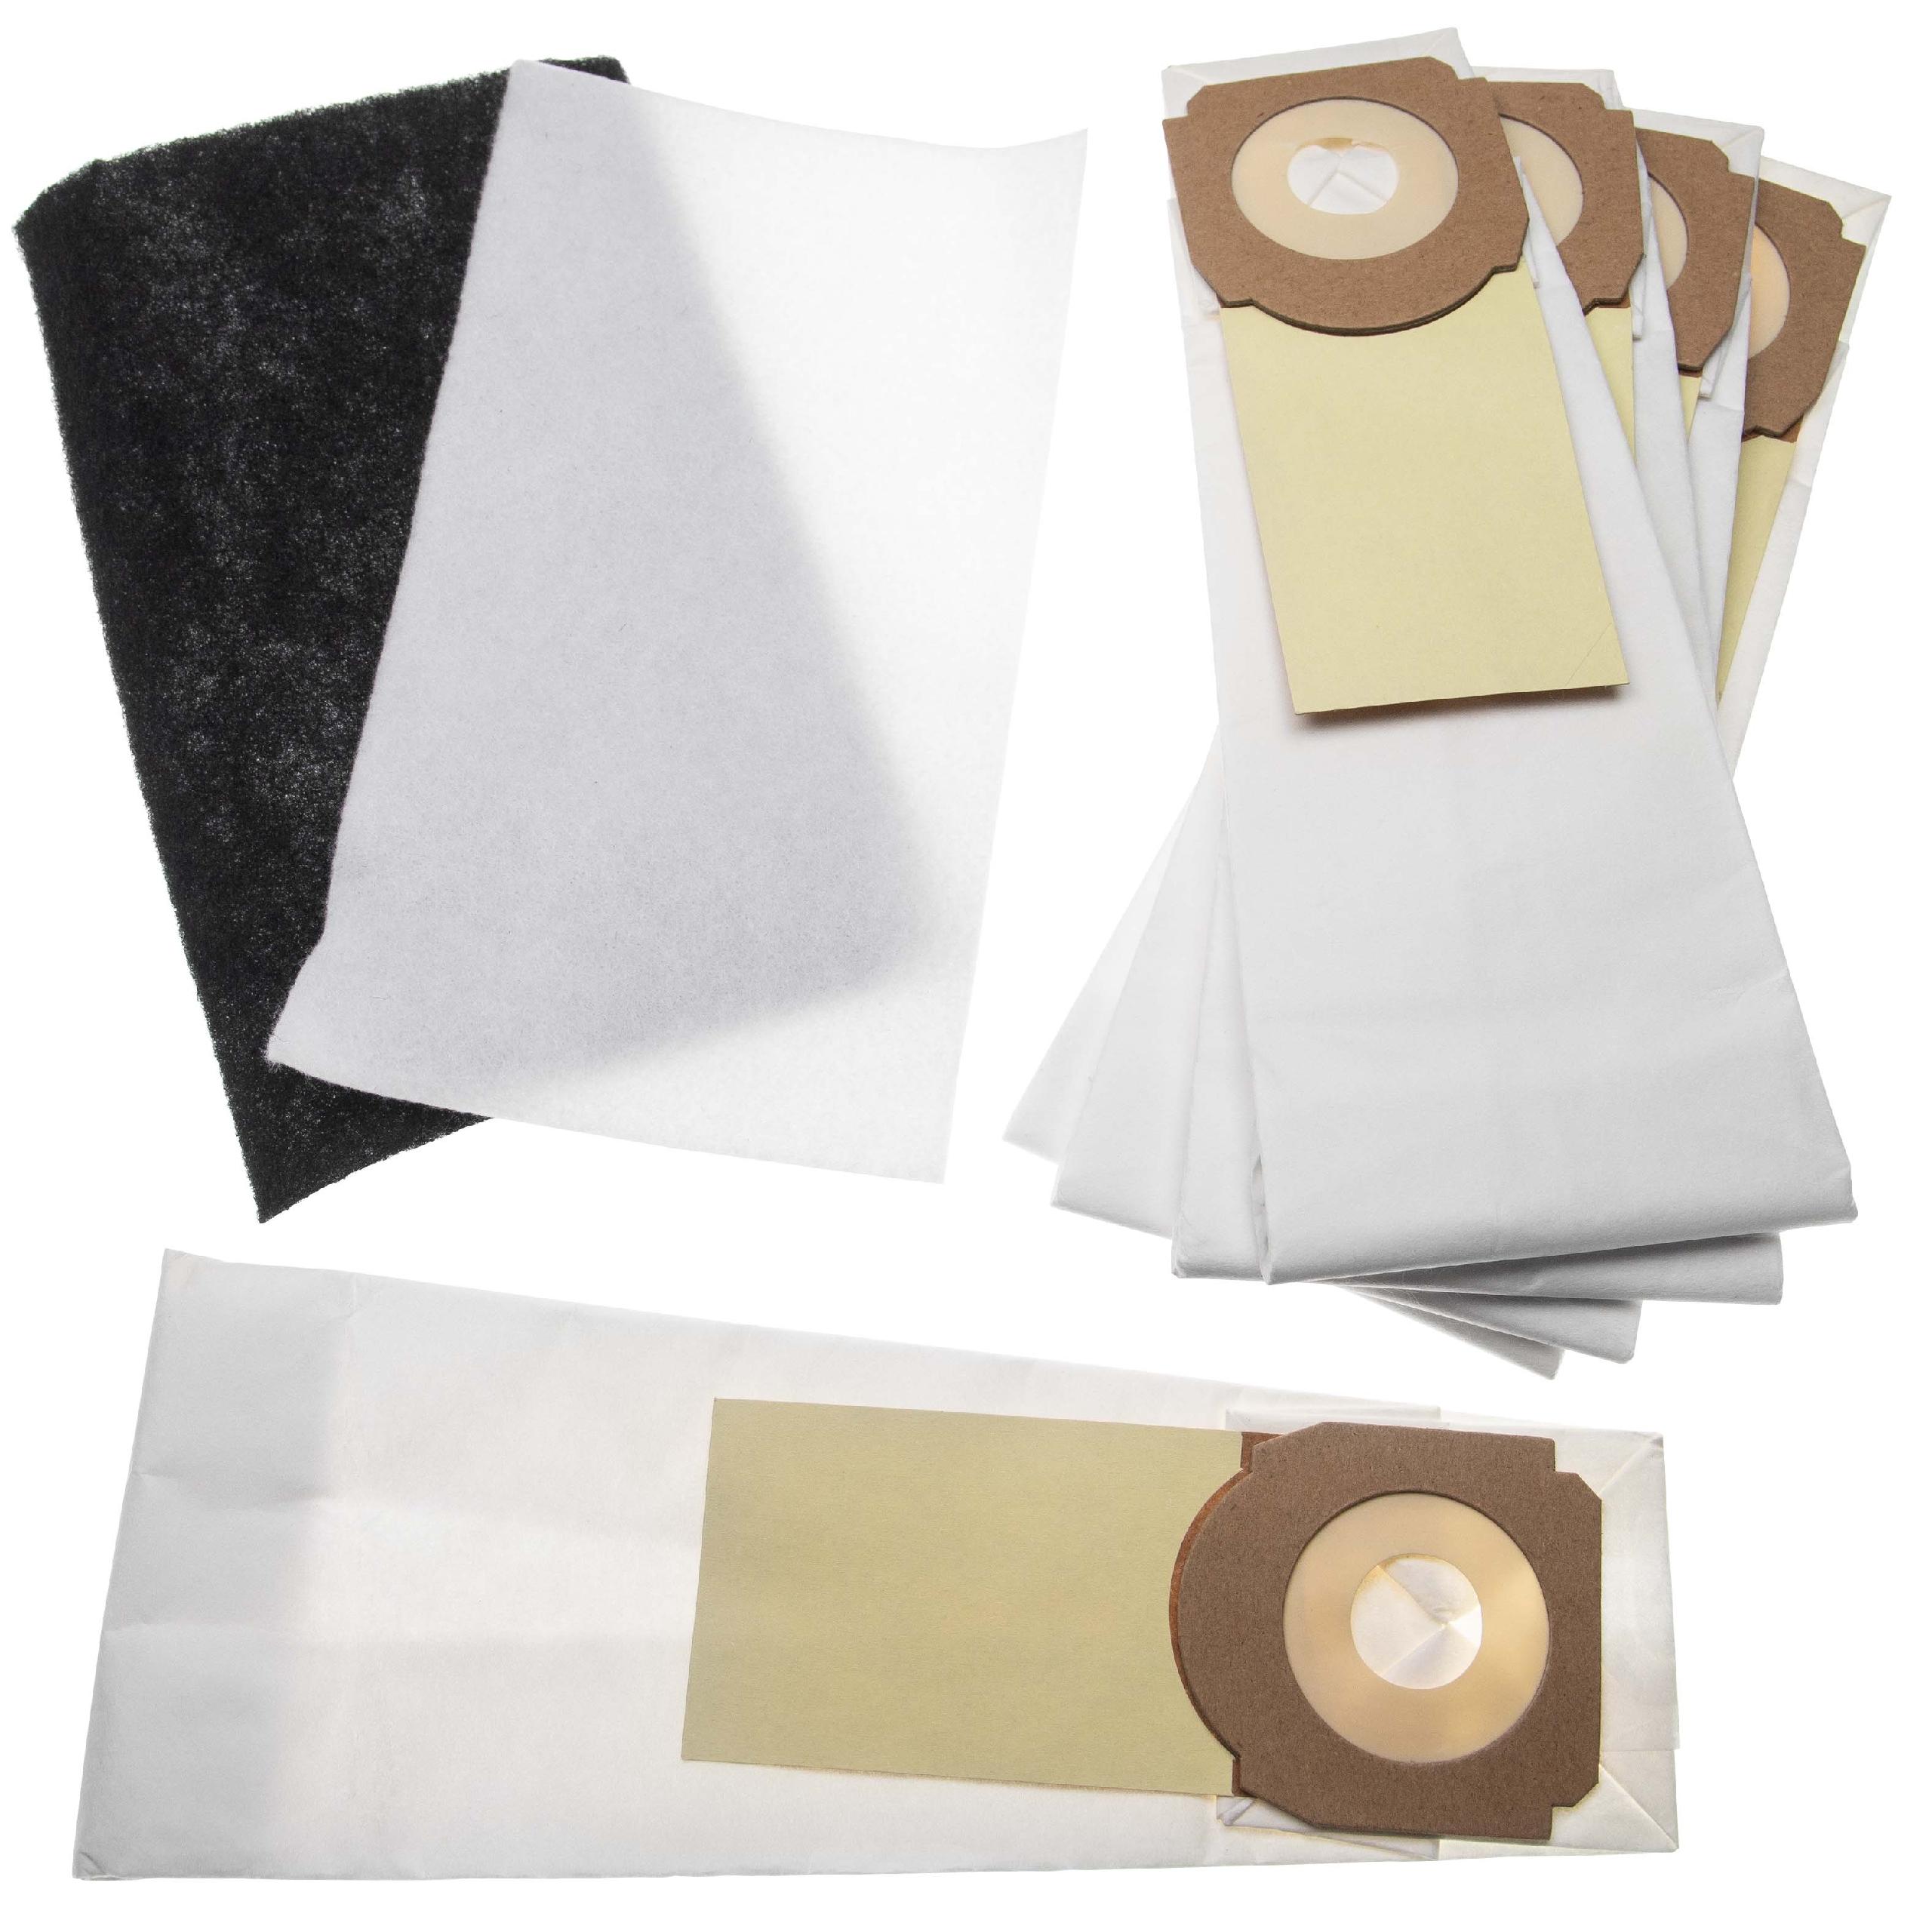 Kit filtre + sac 7 pcs (papier) remplace Hoover H59, 35600279 pour aspirateur Hoover